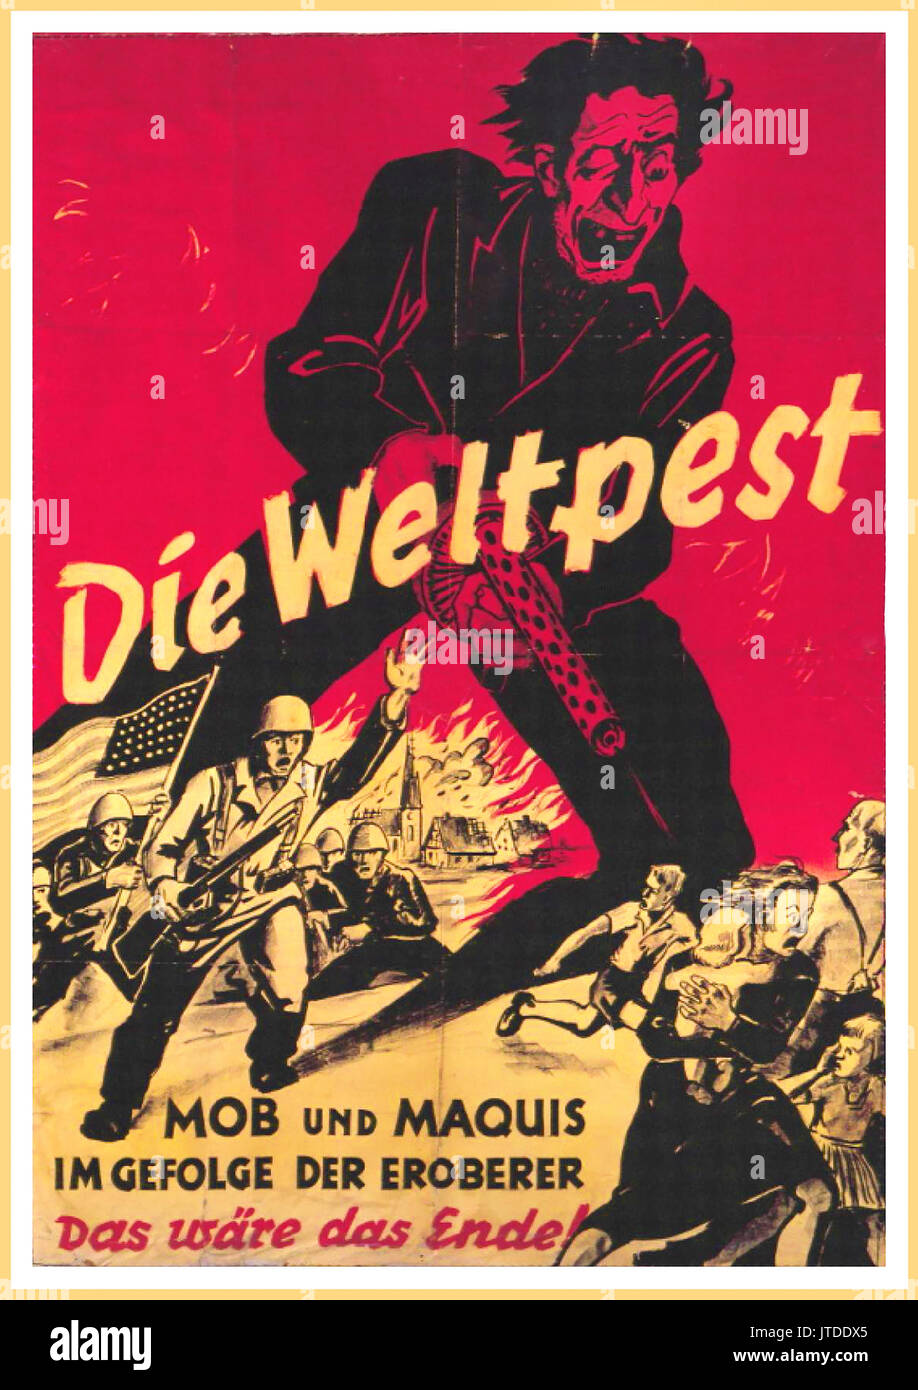 Jahrgang Deutsche Propaganda Poster WW2 erschreckte die deutsche Bevölkerung mit der amerikanischen Streitkräfte in Deutschland als "Der Welt Pest ''Mob und Maquis ein Ergebnis dieser Kräfte'' Das wäre das Ende." Stockfoto